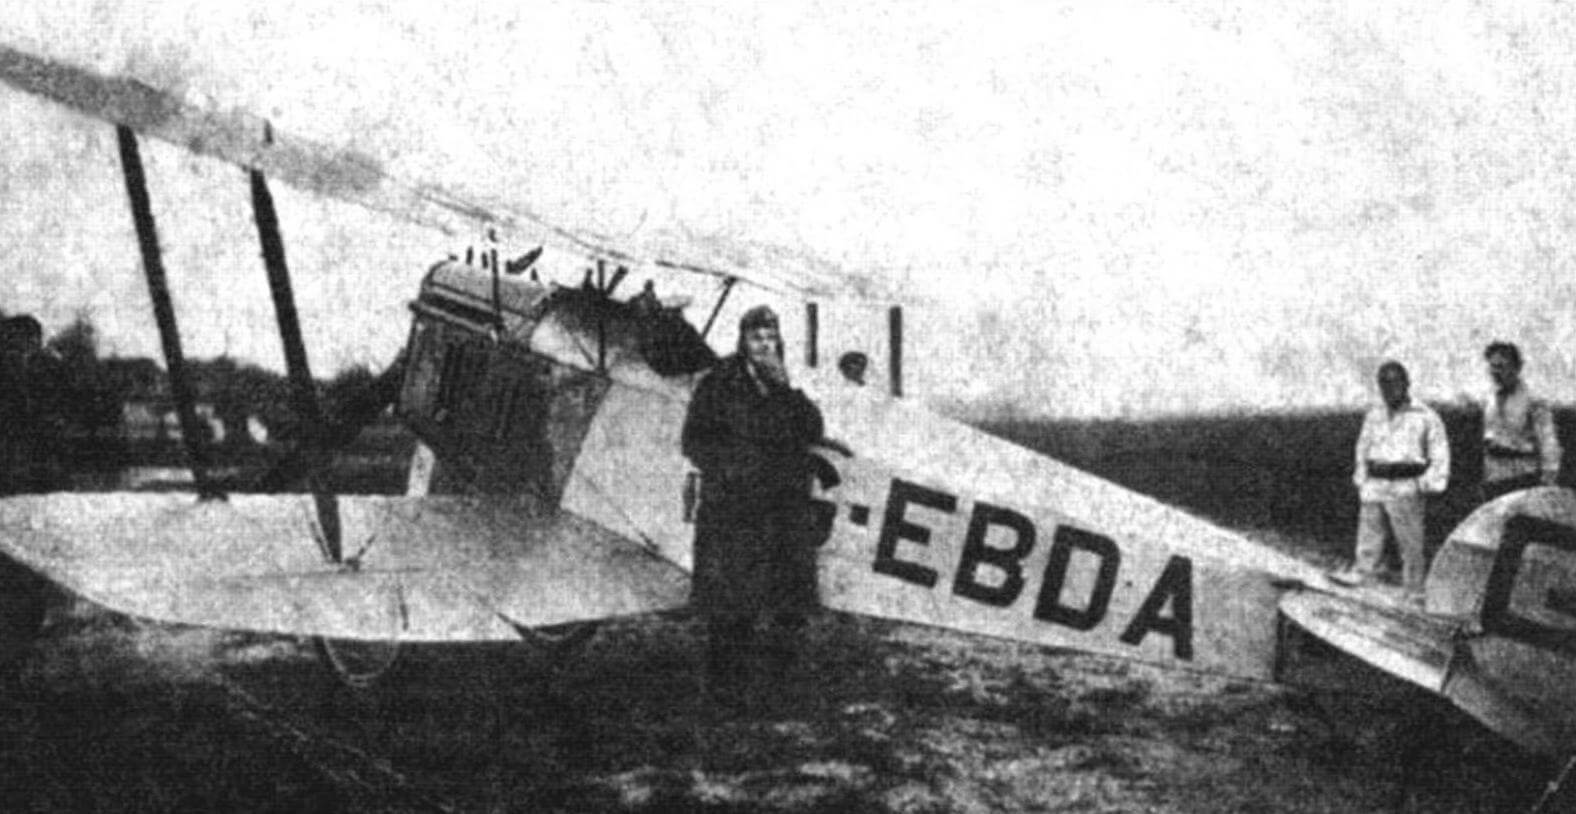 Летчик Гвайта возле своей английской авиетки после успешной посадки на Центральном аэродроме в Москве